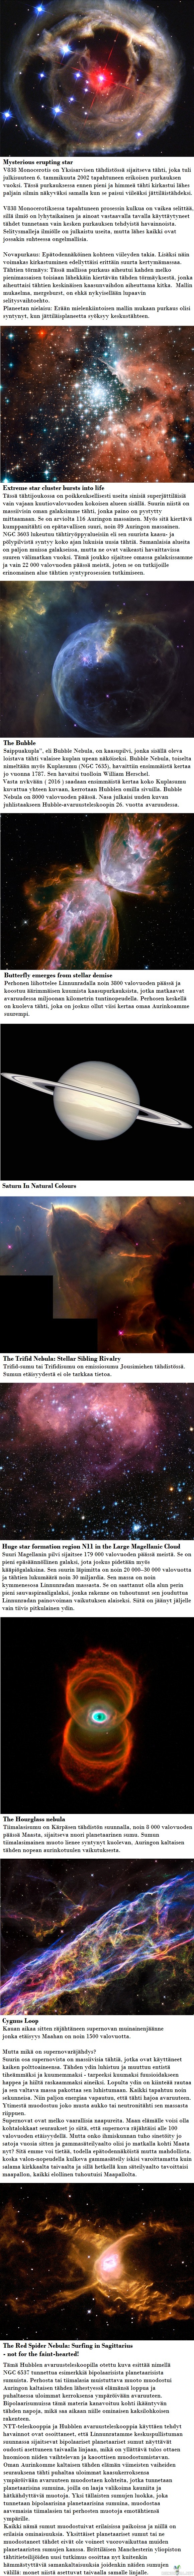 Avaruusteleskooppi Hubblen parhaita kuvia avaruudesta osa 3 - Hubble on palvellut hyvin. Vuonna 1990 kiertoradalle ammuttu teleskooppi on viheltänyt halki tyhjyyden liki 30 000 kilometrin tuntivauhdilla, kuvaten universumimme ihmeitä ihmeellisen tarkasti.

Hubblen keräämä data on ollut äärimmäisen arvokasta. Sen ottamien 1,2 miljoonan kuvan pohjalta avaruusluotainten kulkua on saatu ohjattua erittäin tarkasti, ja oman aurinkomme elämää ja kuolemaa on saatu ennustettua ennennäkemättömän laajasti. Hubblen työ on myös ollut pohjana liki 13 000 tieteellisessä julkaisussa.

Hubblen elinaika alkaa kuitenkin olla ohitse, sillä NASA:n rakentama seuraaja, James Webb Space Telescope, on nousemassa taivaille vuonna 2018. Se pystyy paitsi parempiin tuloksiin, myös havainnoimaan universumia tavoilla joihin Hubble ei kykene, kuten infrapunakuviin. Tiedemiehet uskovat, että juuri tämä infrapunakyky antaa JWST:n kuvata entistä kauempana olevia kohteita, sillä niiden valon aallonpituudesta on jäljellä enää punasiirtymä.

Ps. Mikä tämän median Hubblen kuvista oli erikoisin, näyttävin tai kaunein? Kommenttiosiossa voi mainita parhaan kuvan.
